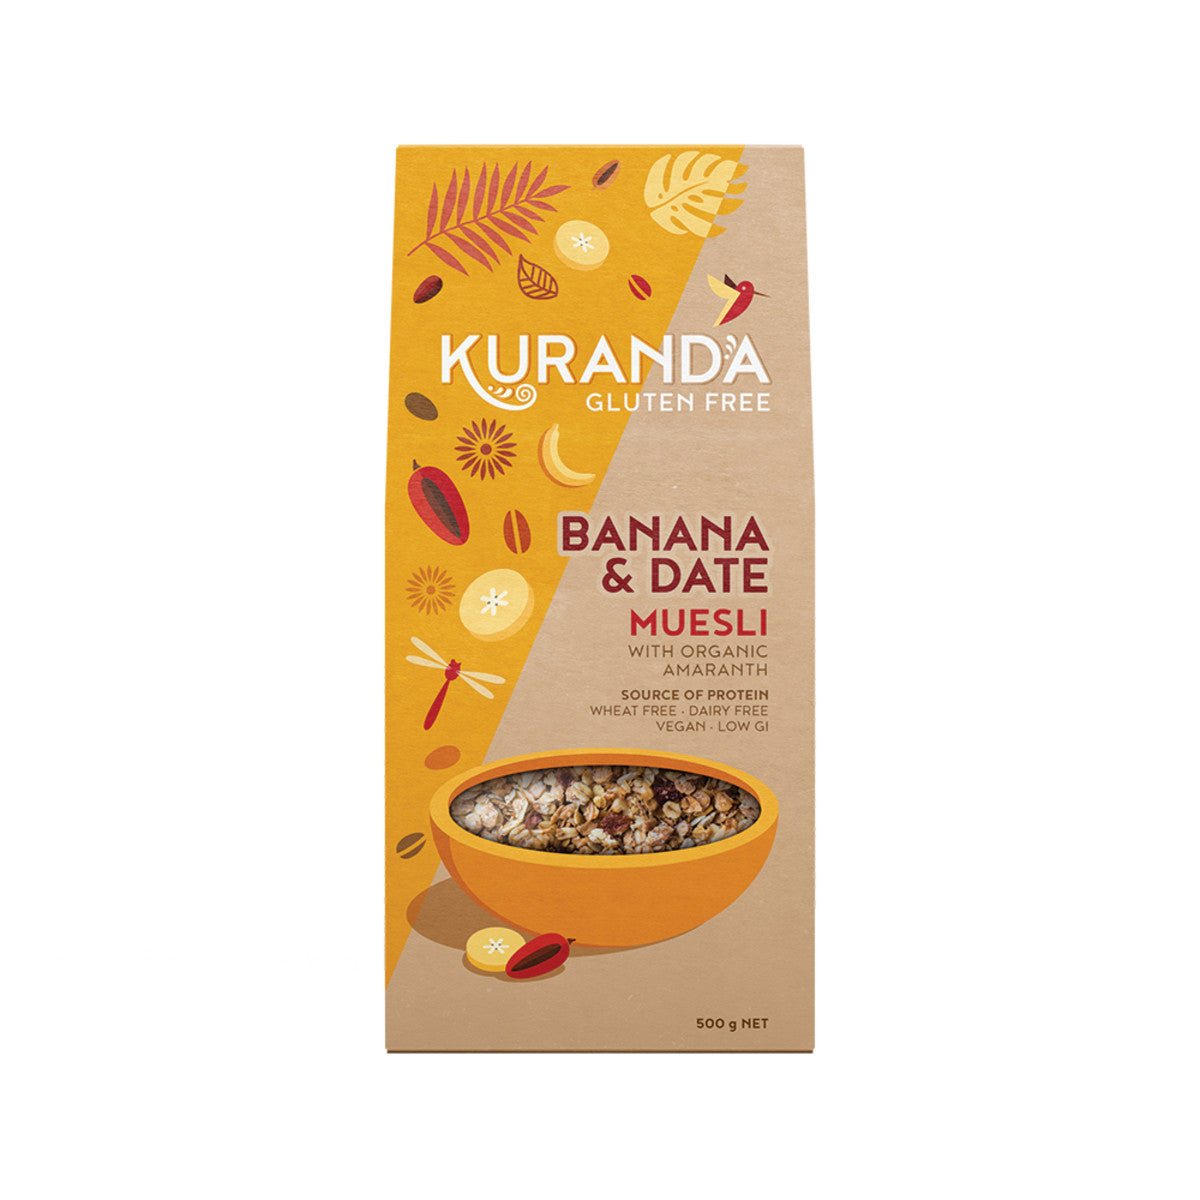 Kuranda - Gluten Free Muesli Banana and Date